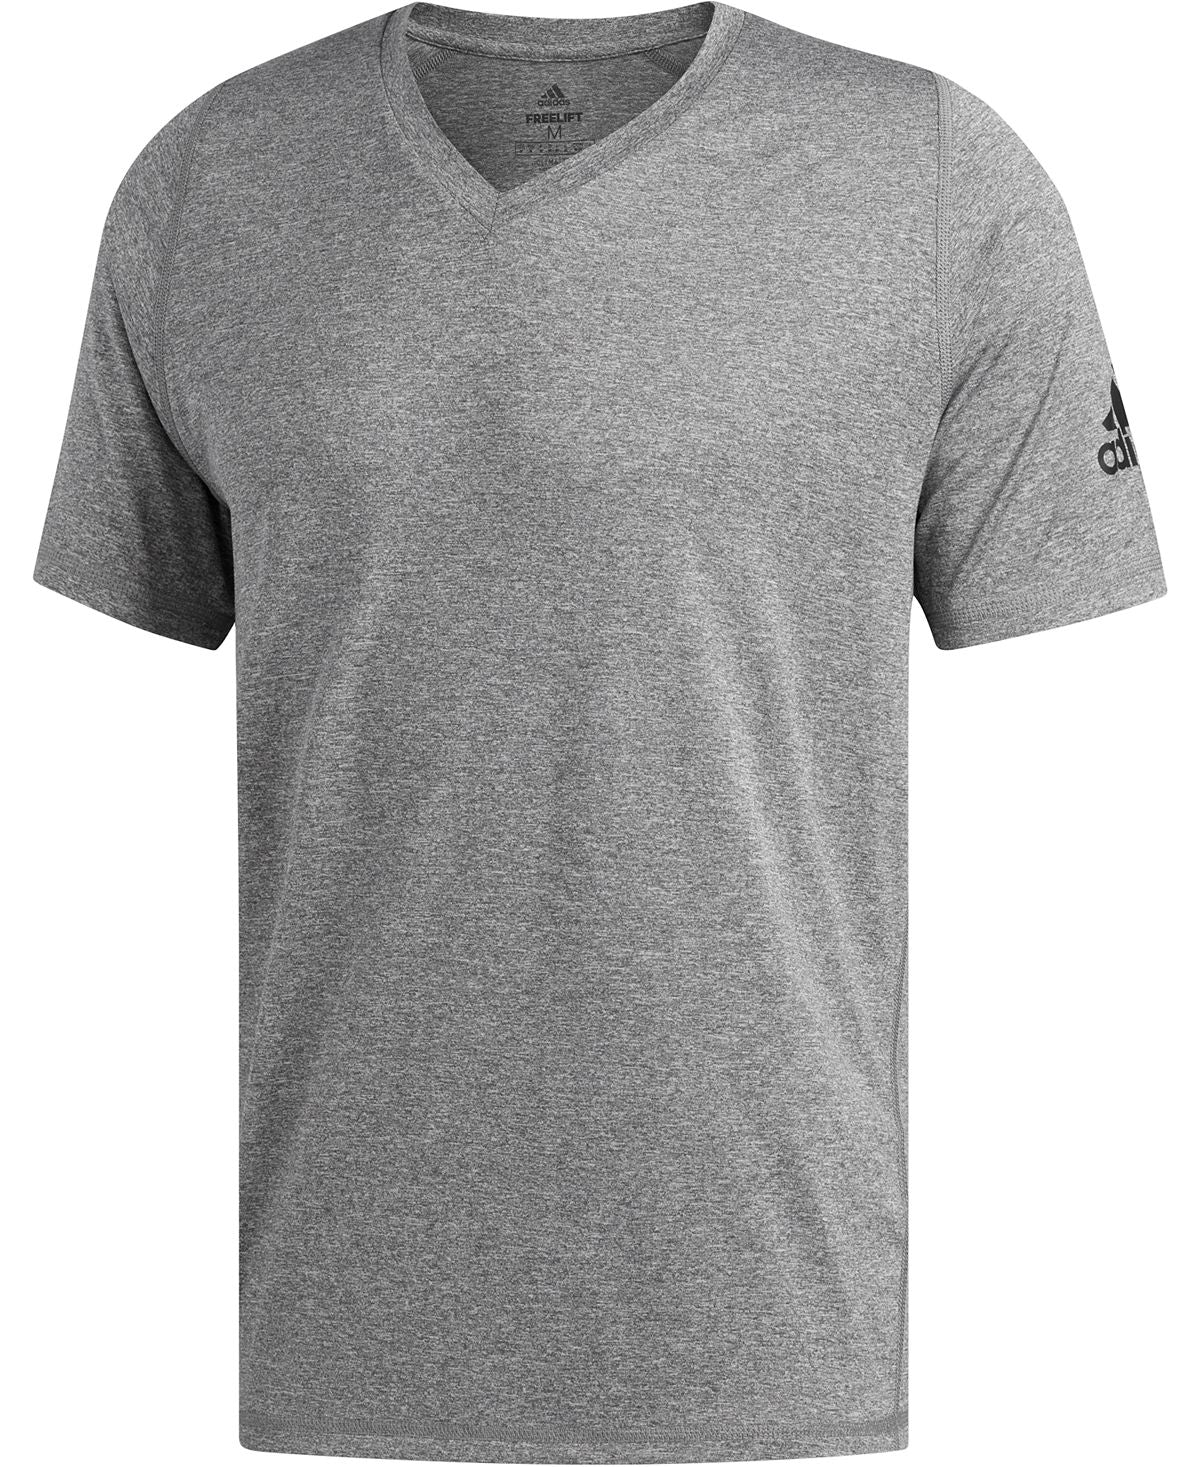 Adidas Freelift Climalitet-shirt Medium Grey Heather